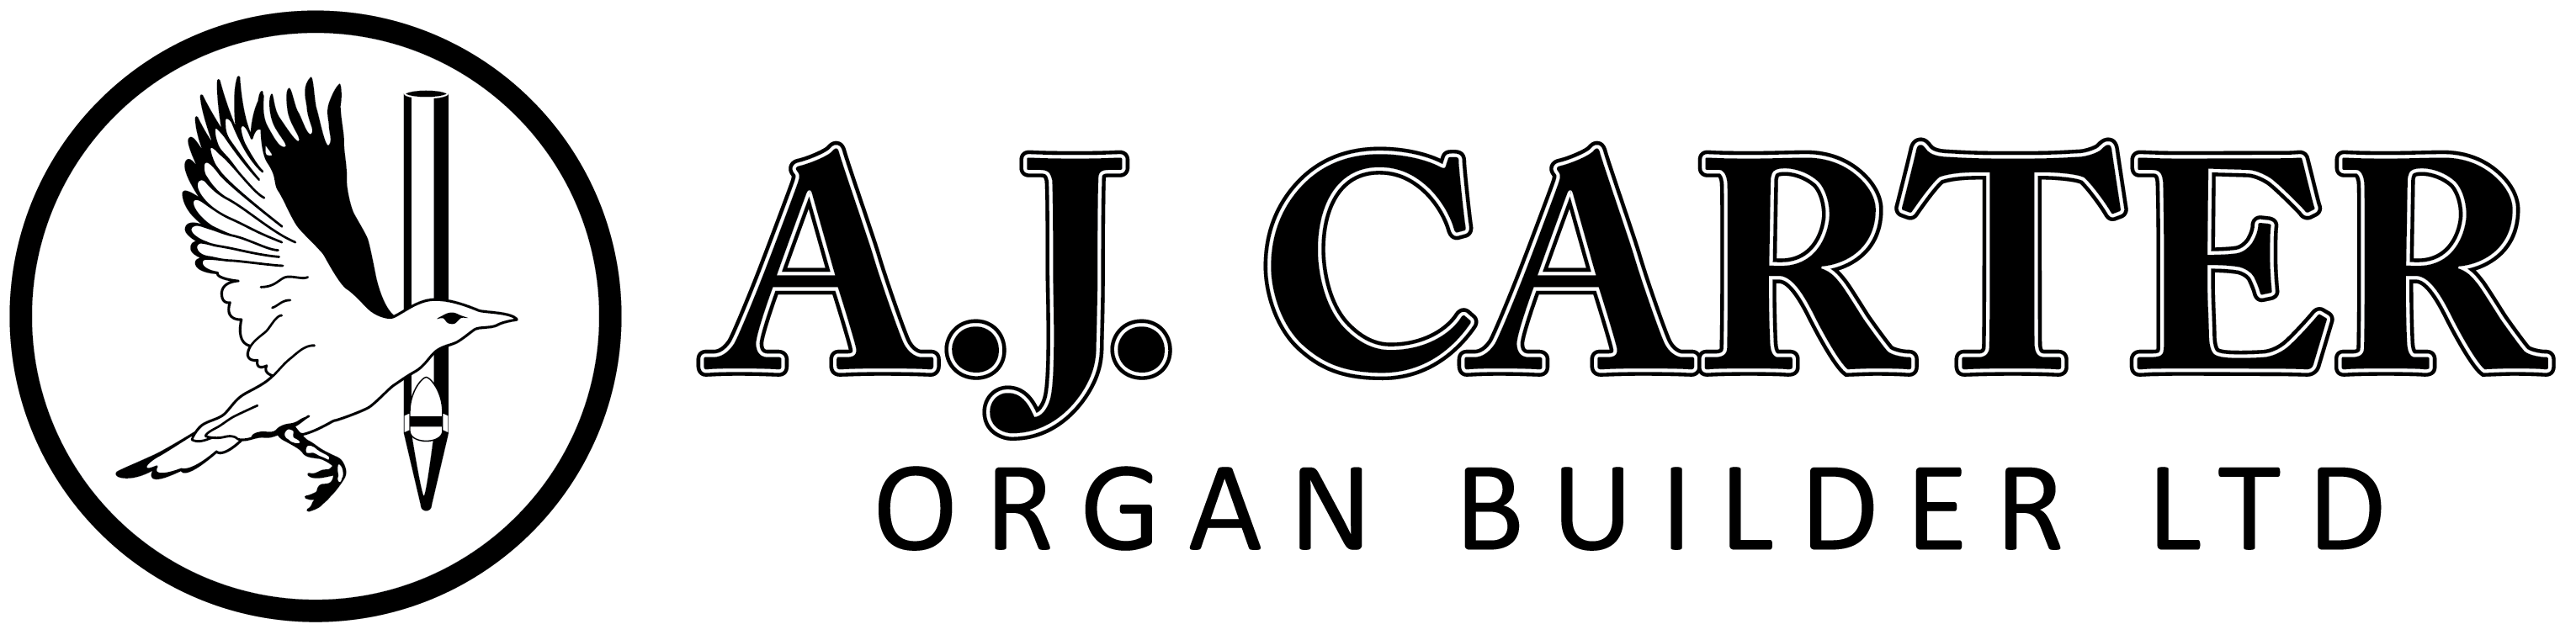 A. J. Carter Organ Builder Ltd.